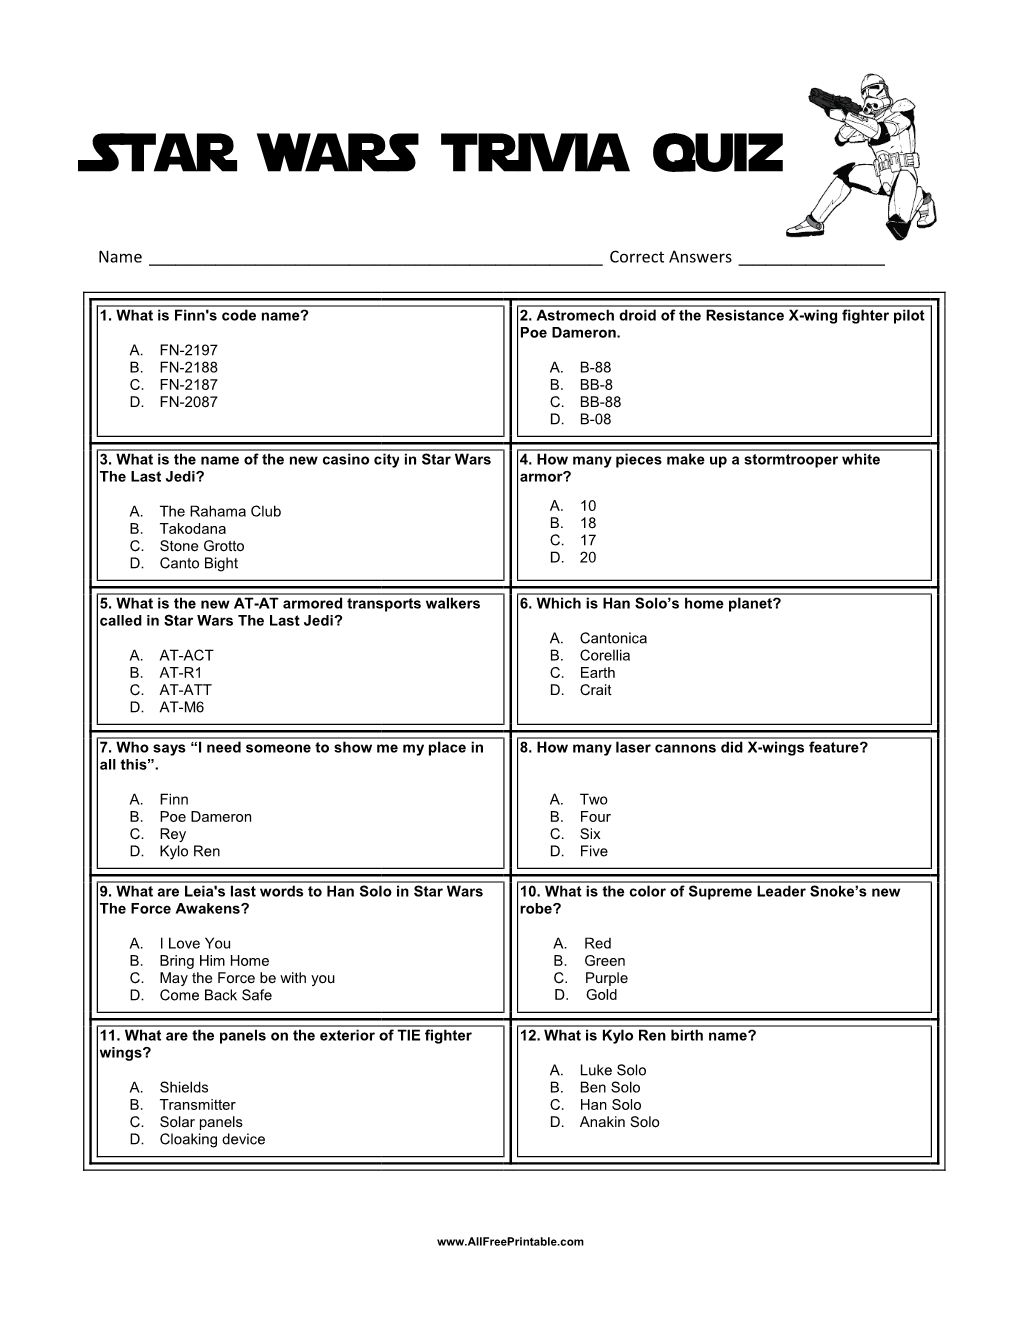 Star Wars Trivia Quiz